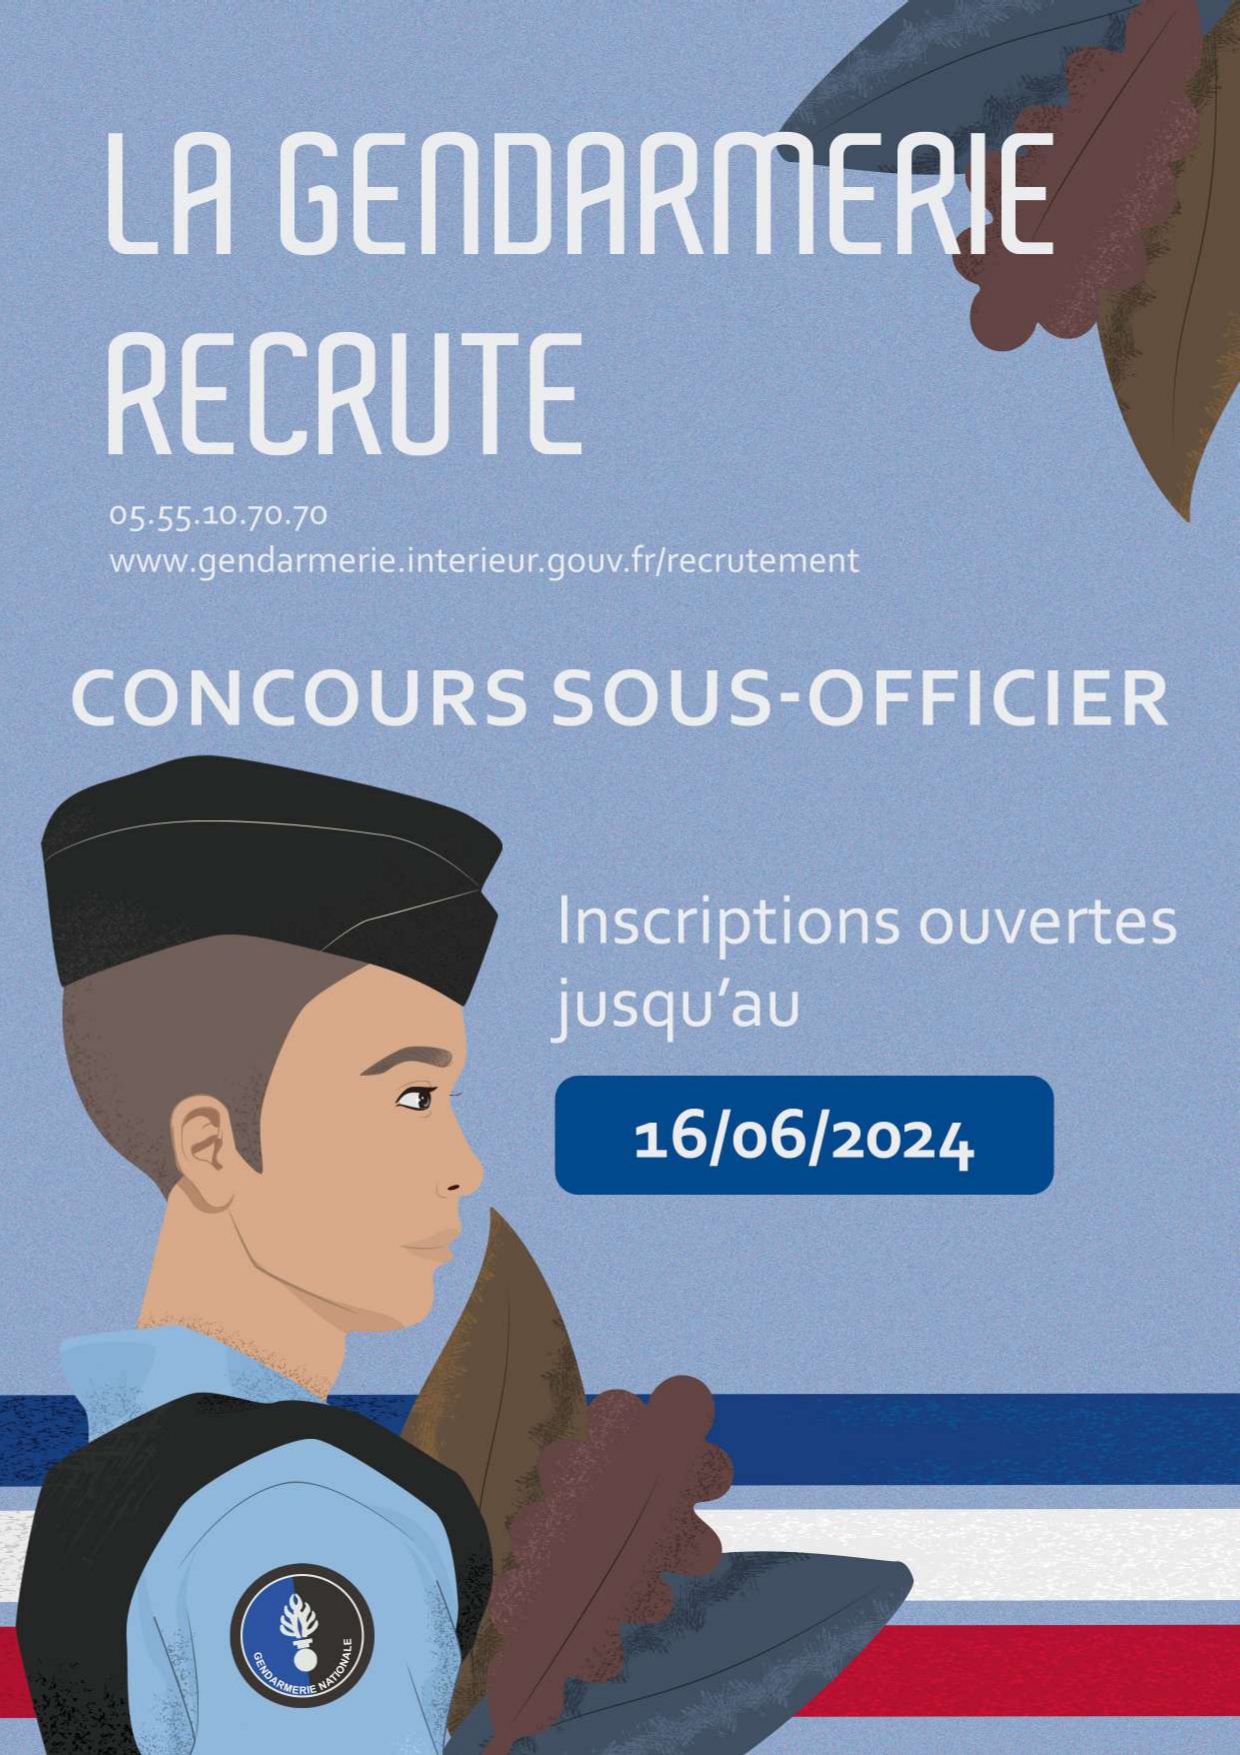 Gendarmerie concours sous officier juin 2024